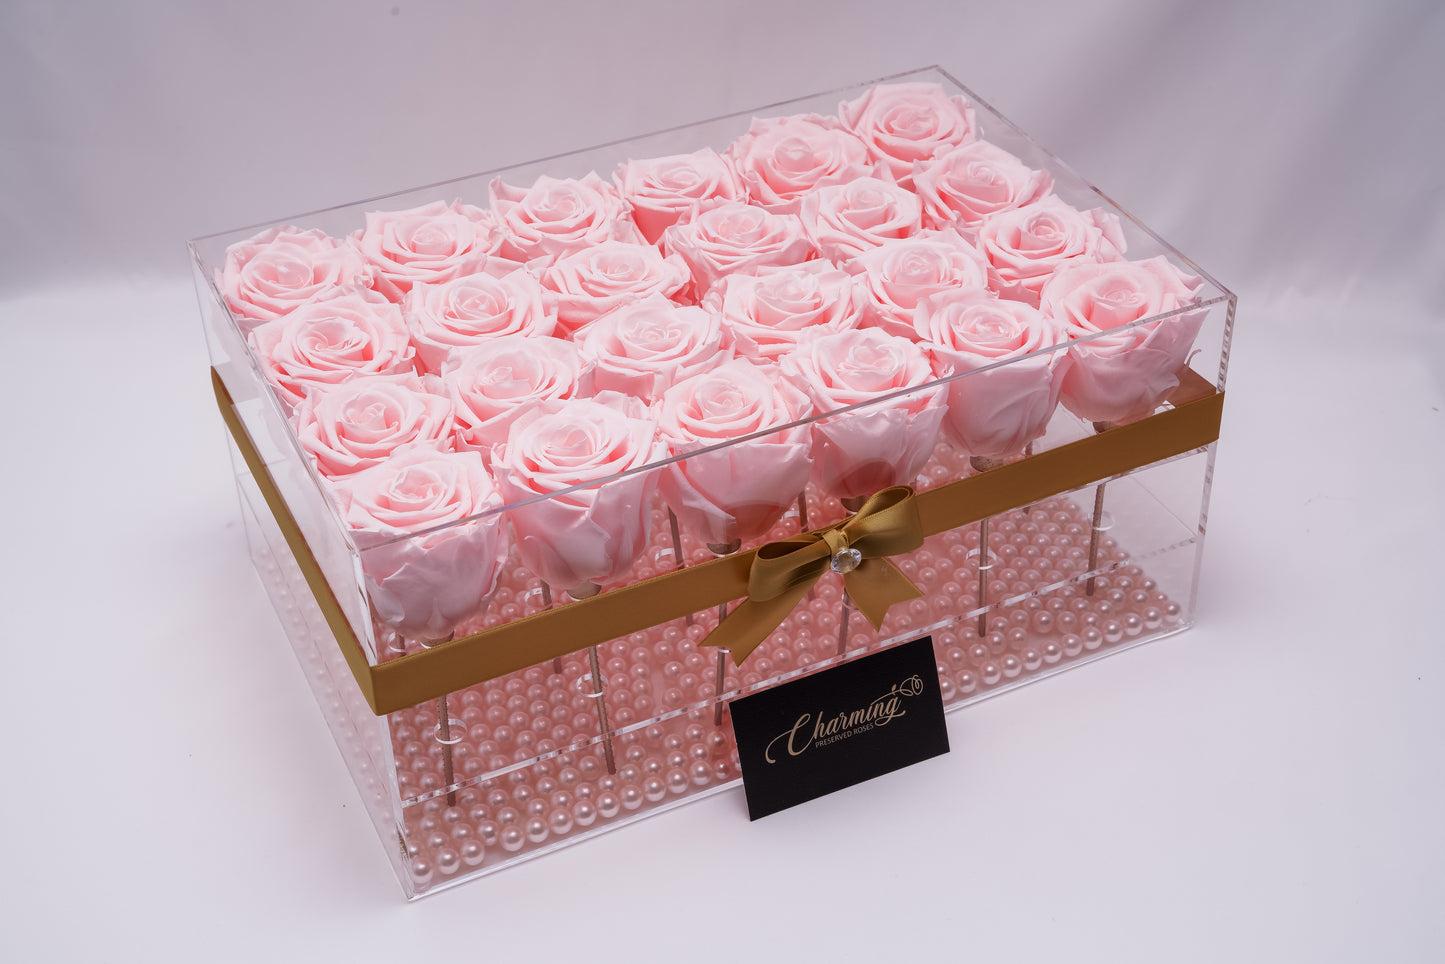 24 Rose Premium box with Stem